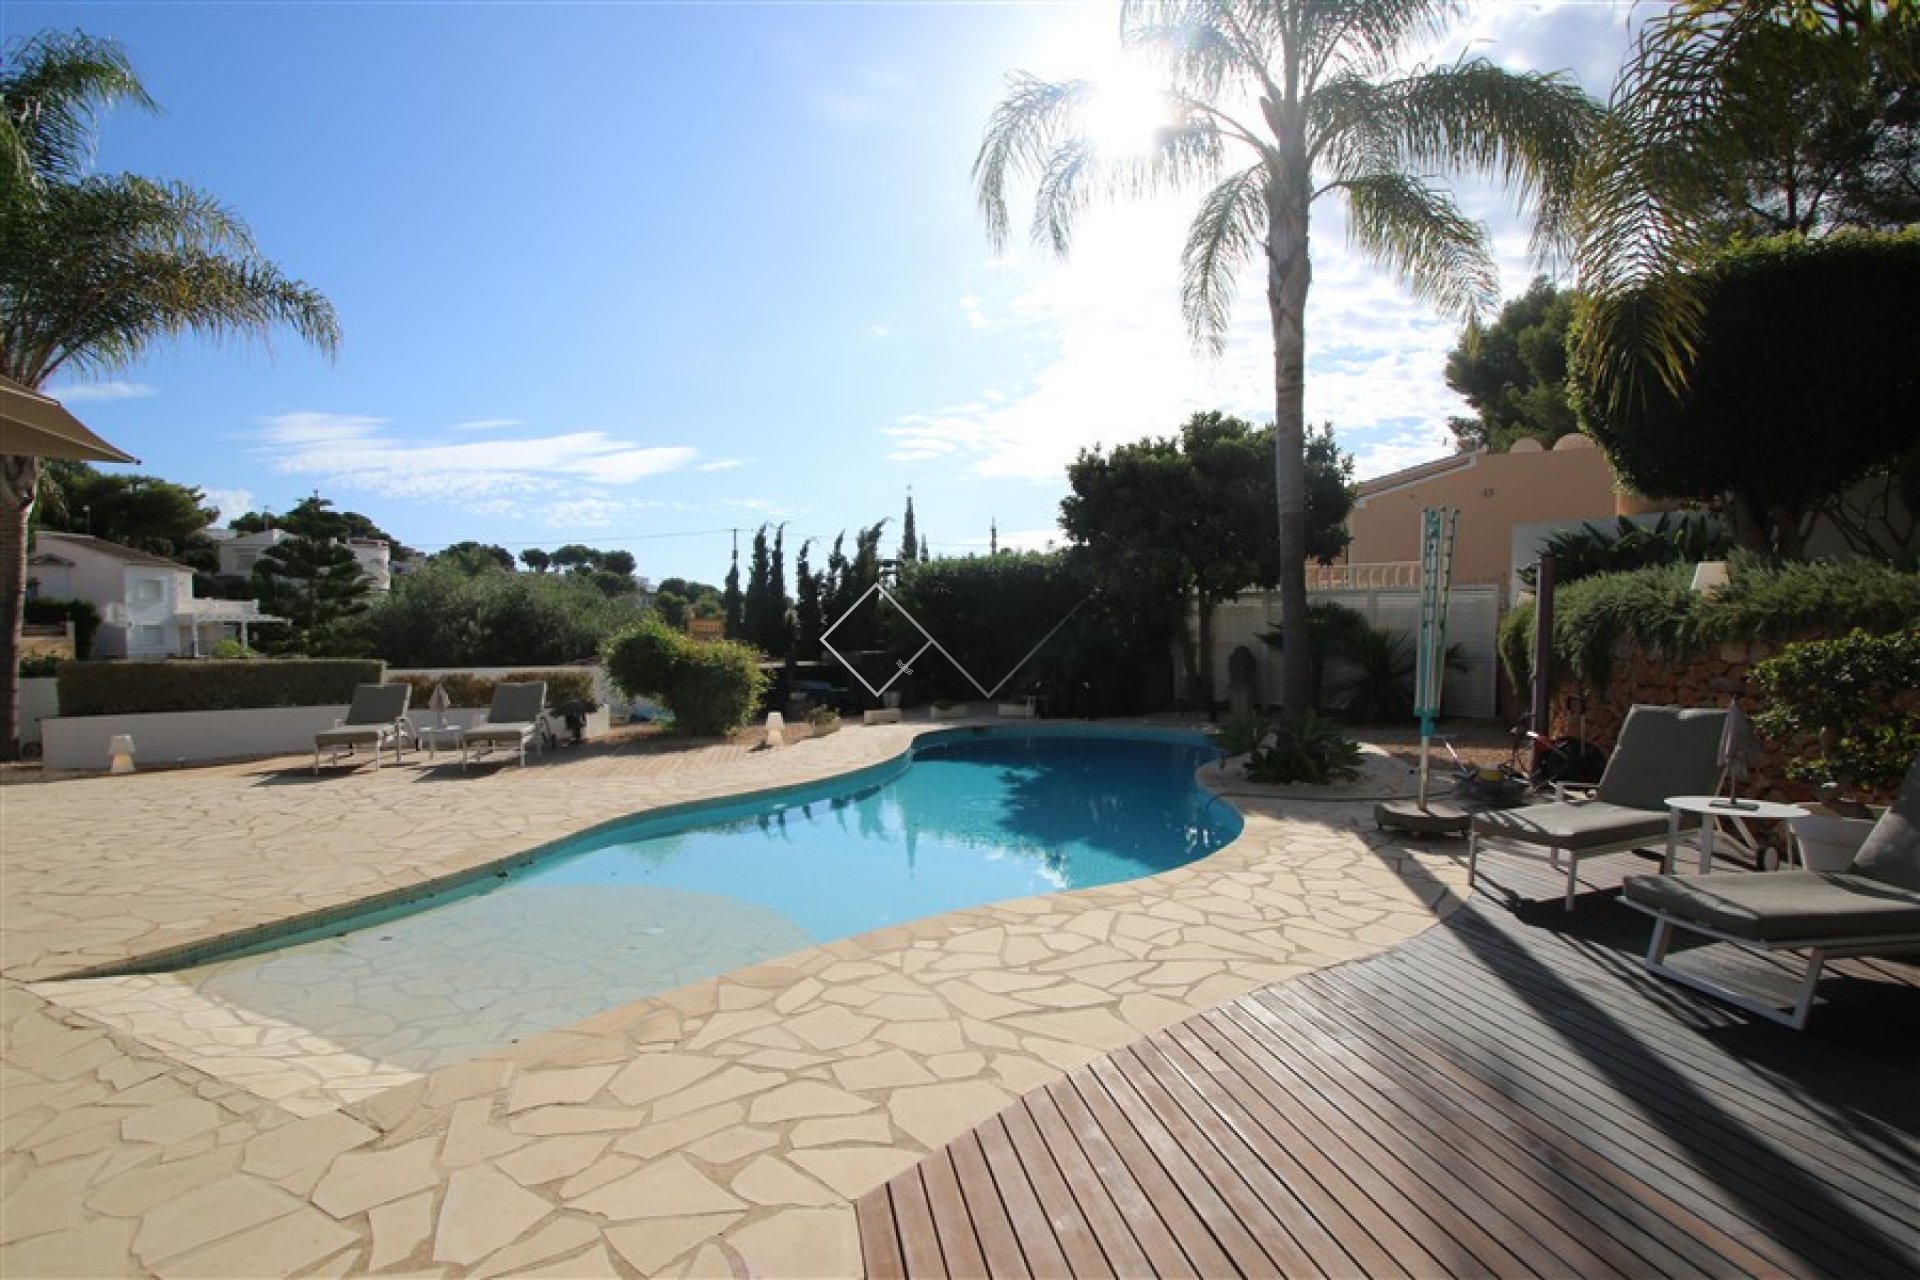 Pool und Terrasse - Ibiza Villa zu verkaufen in Benissa mit beheiztem Pool